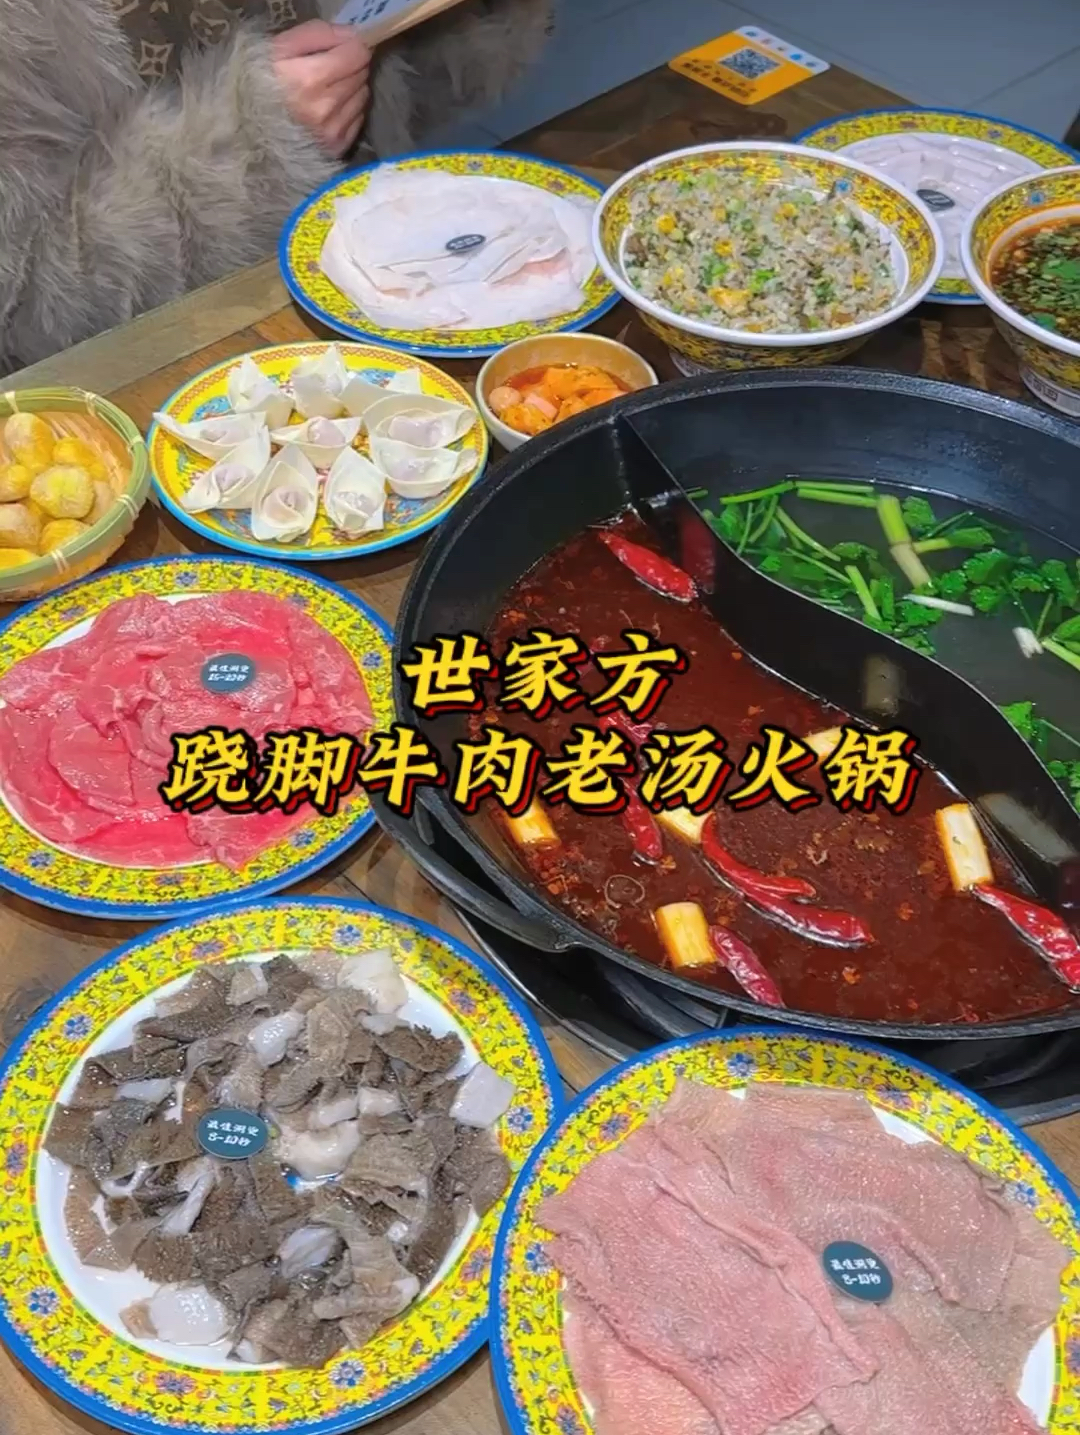 乐山的跷脚牛肉都吃过 跷脚牛肉火锅也是一样的好吃